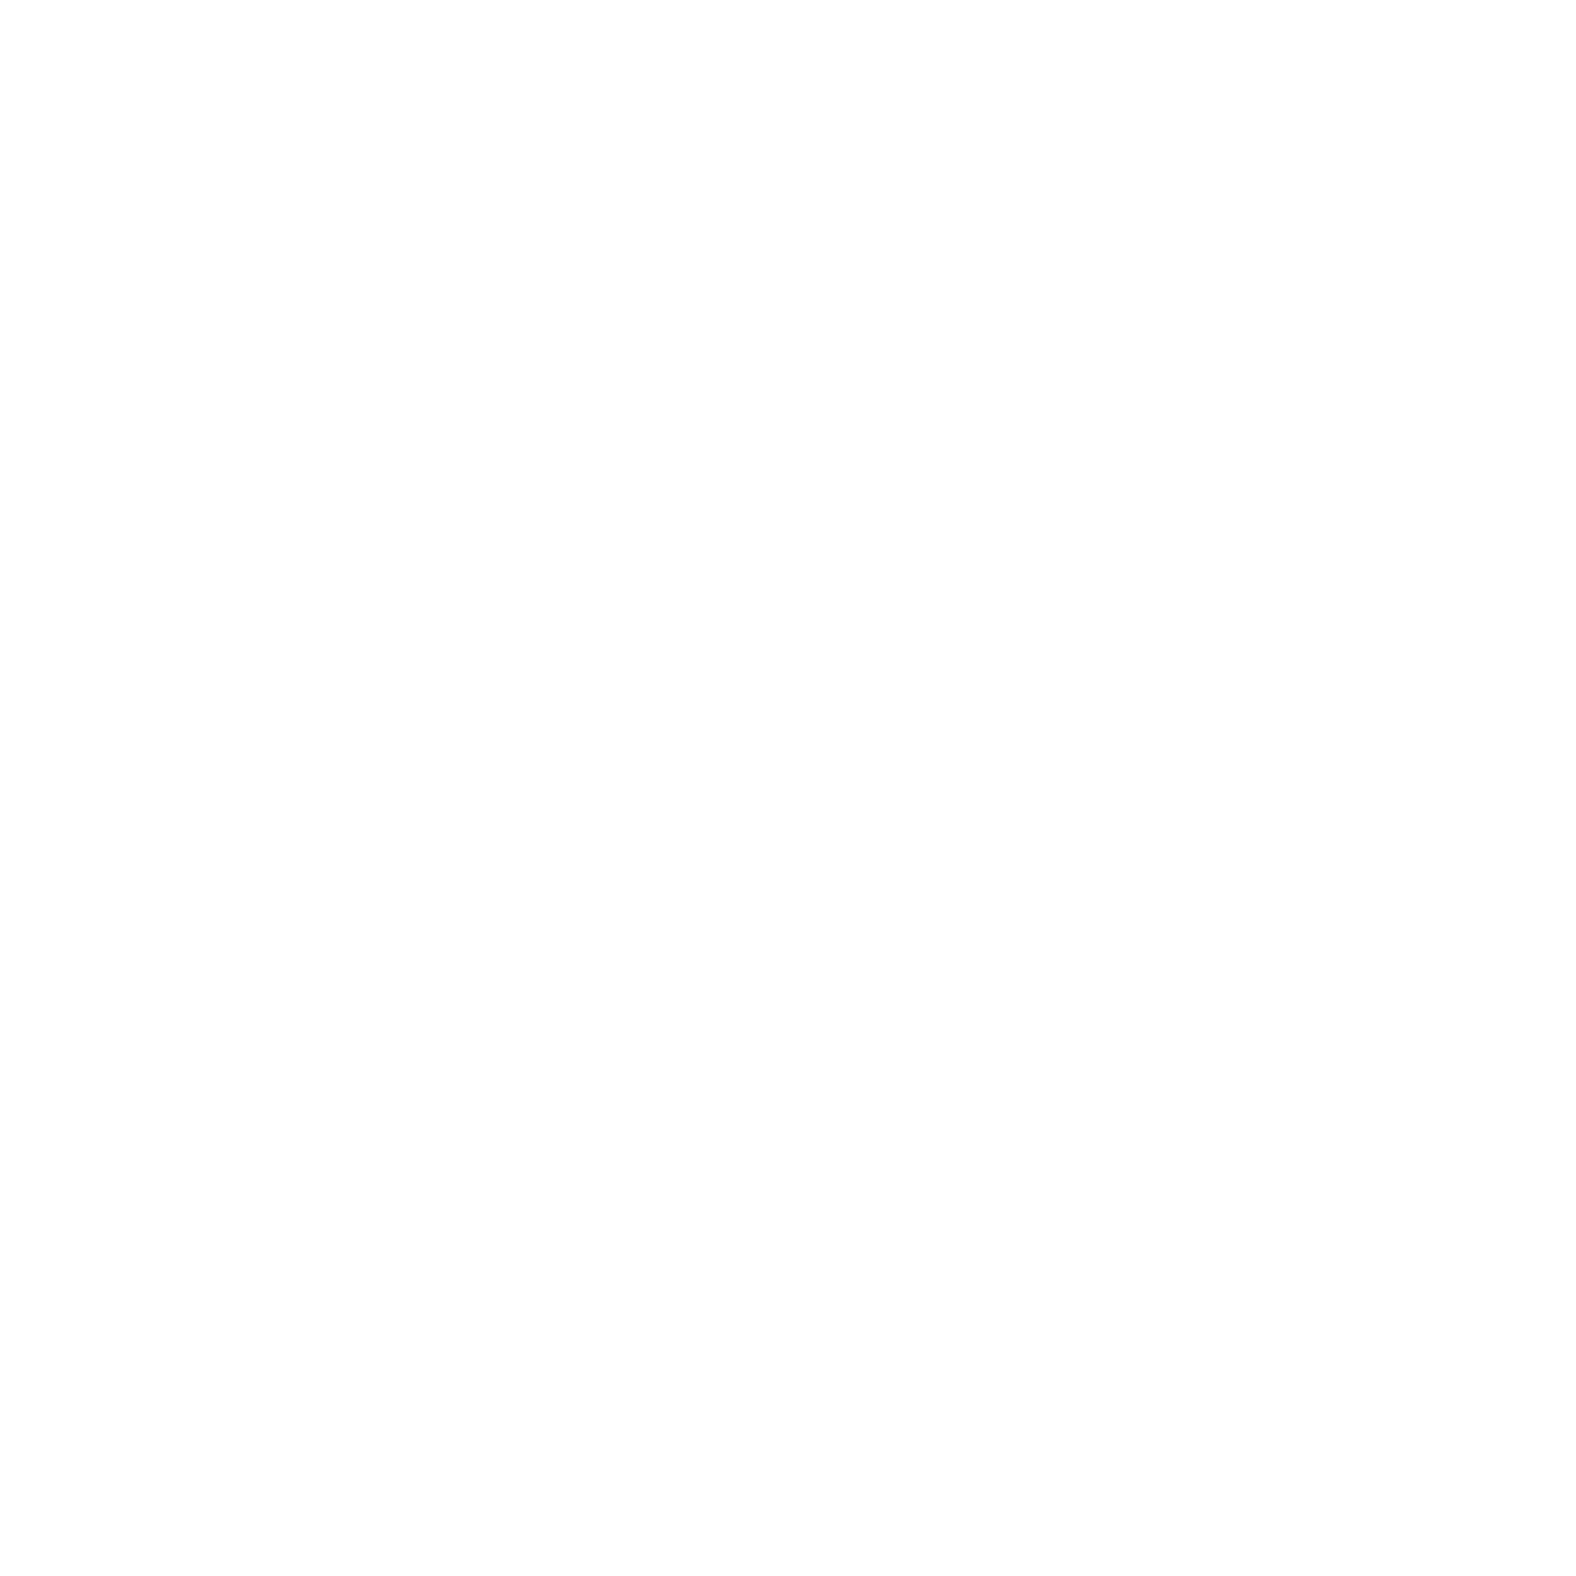 Aedas Homes logo for dark backgrounds (transparent PNG)